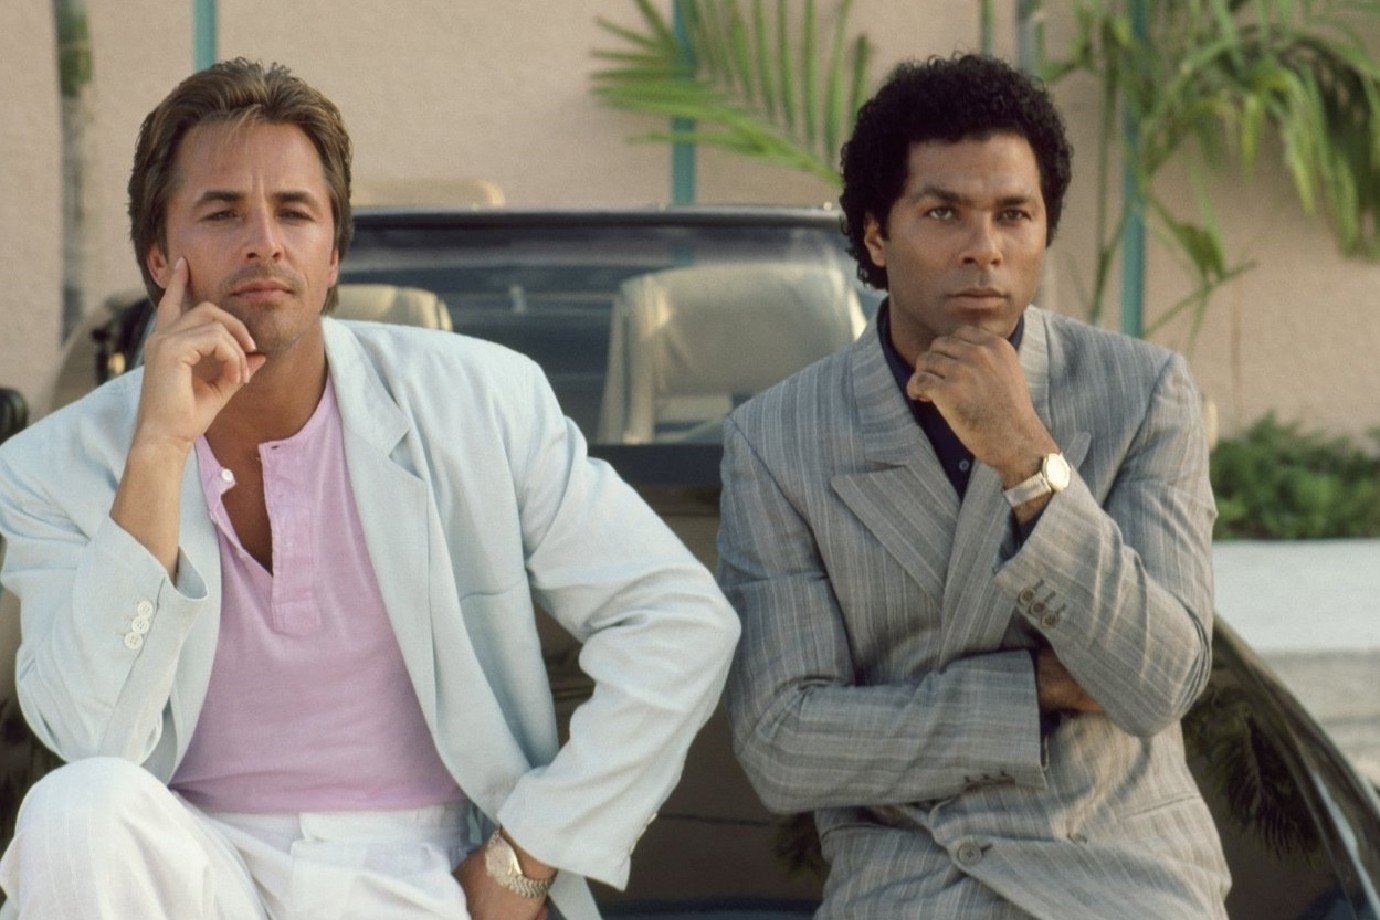 Miami Vice (1984 - 1989):

"Miami Vice" é um drama policial que segue os detetives Sonny Crockett e Ricardo Tubbs enquanto combatem o crime em Miami. Conhecida por seu estilo visual, trilha sonora marcante e histórias envolventes, a série redefiniu o gênero policial na TV.